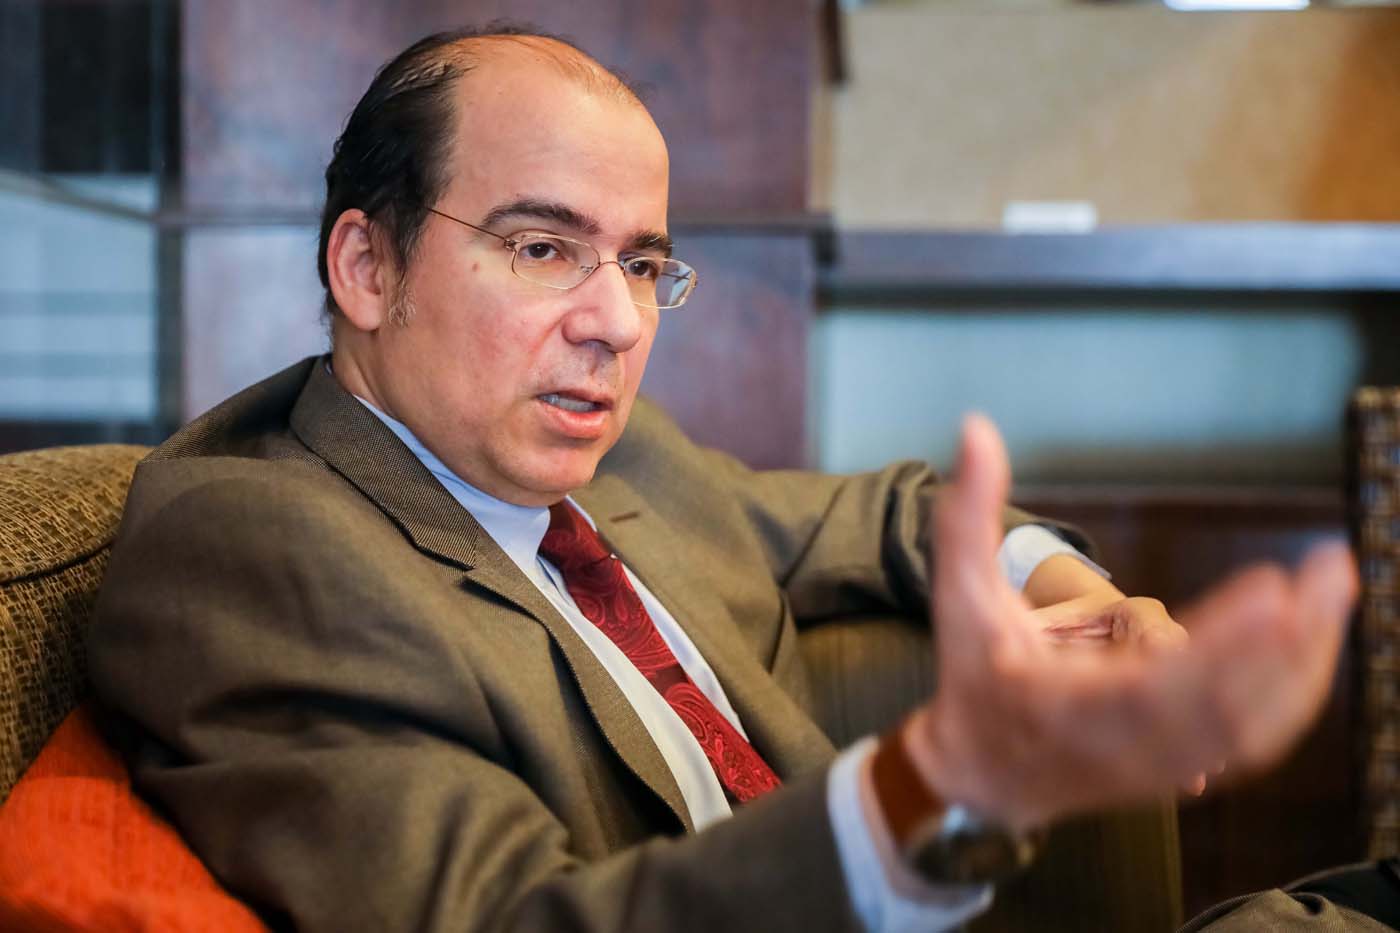 Francisco Rodríguez: Renegociación de la deuda externa a cargo de Maduro no tendría validez legal